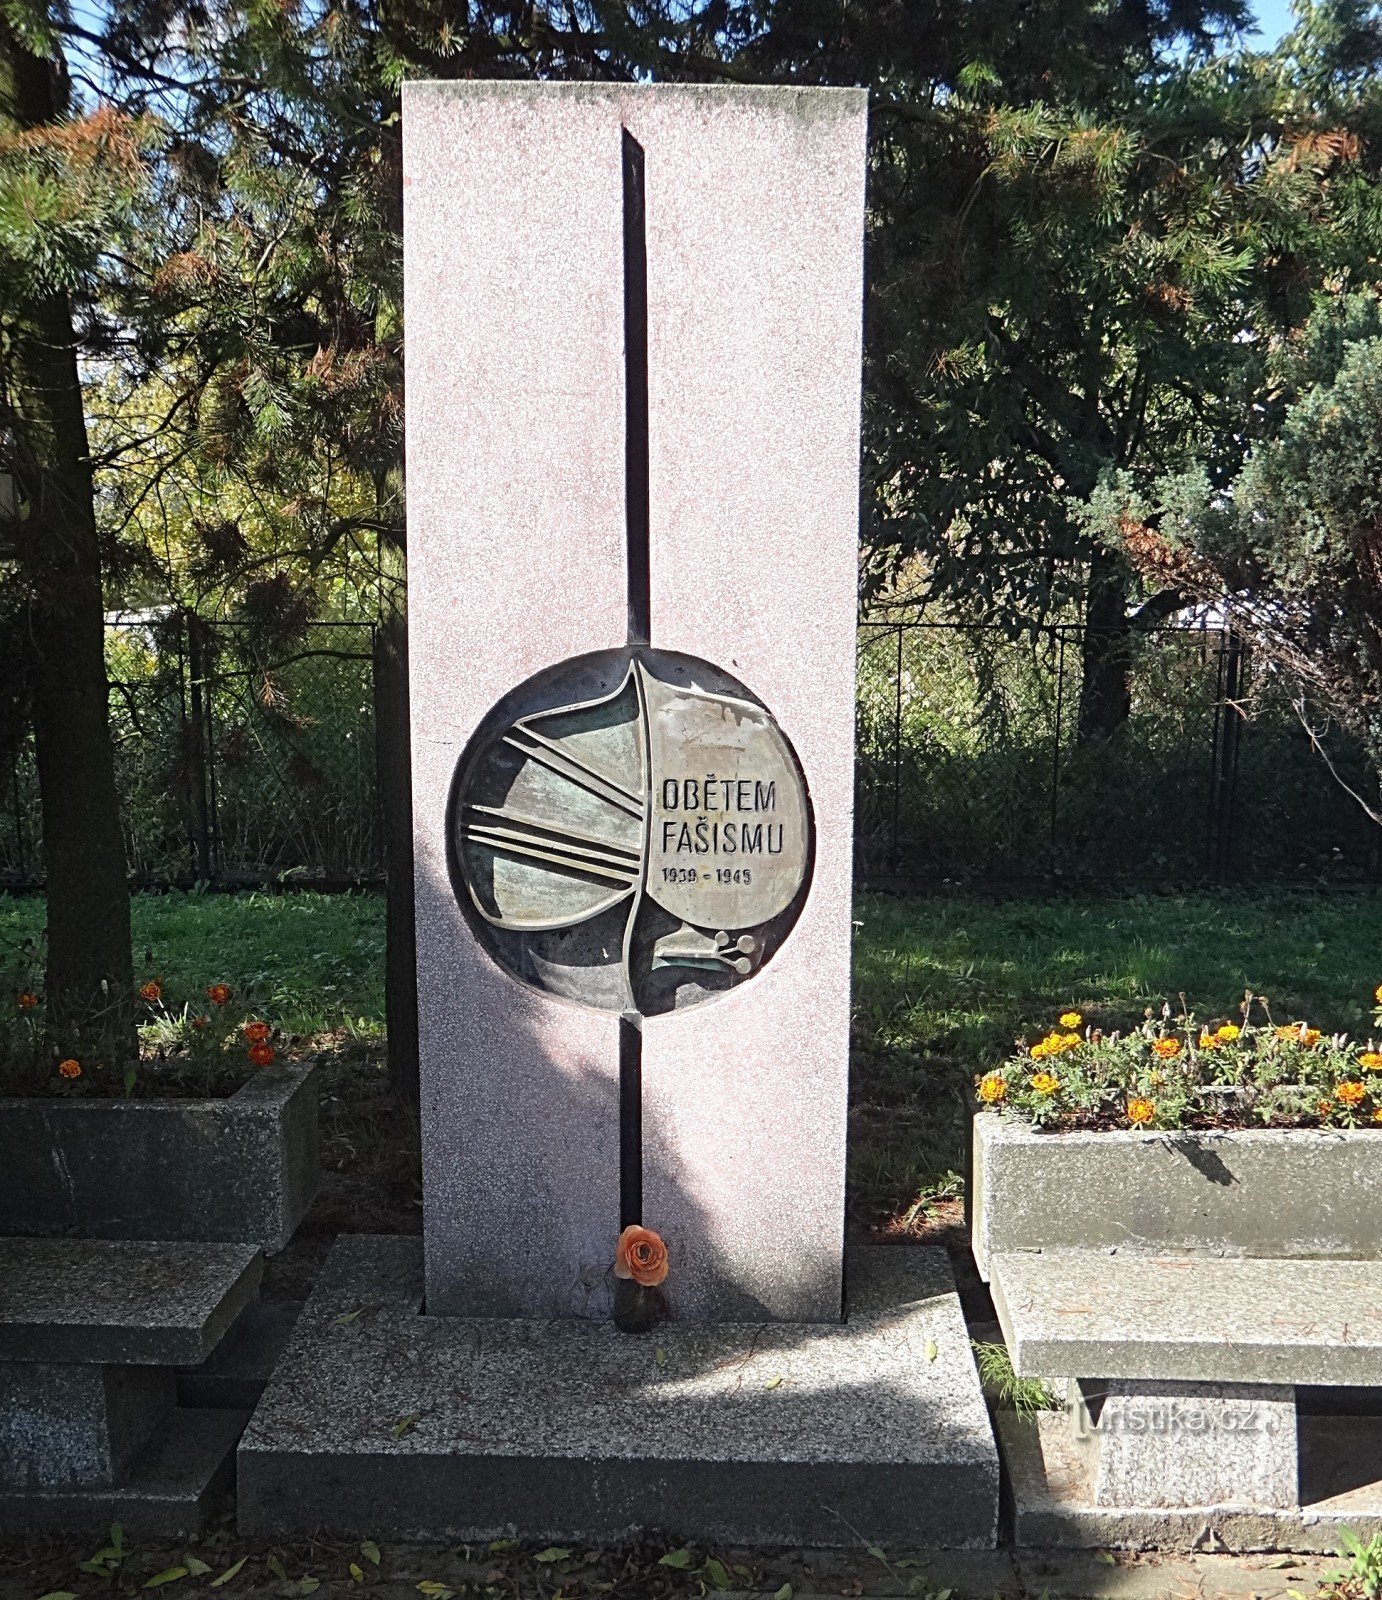 Memorialul Věřňovice pentru victimele fascismului